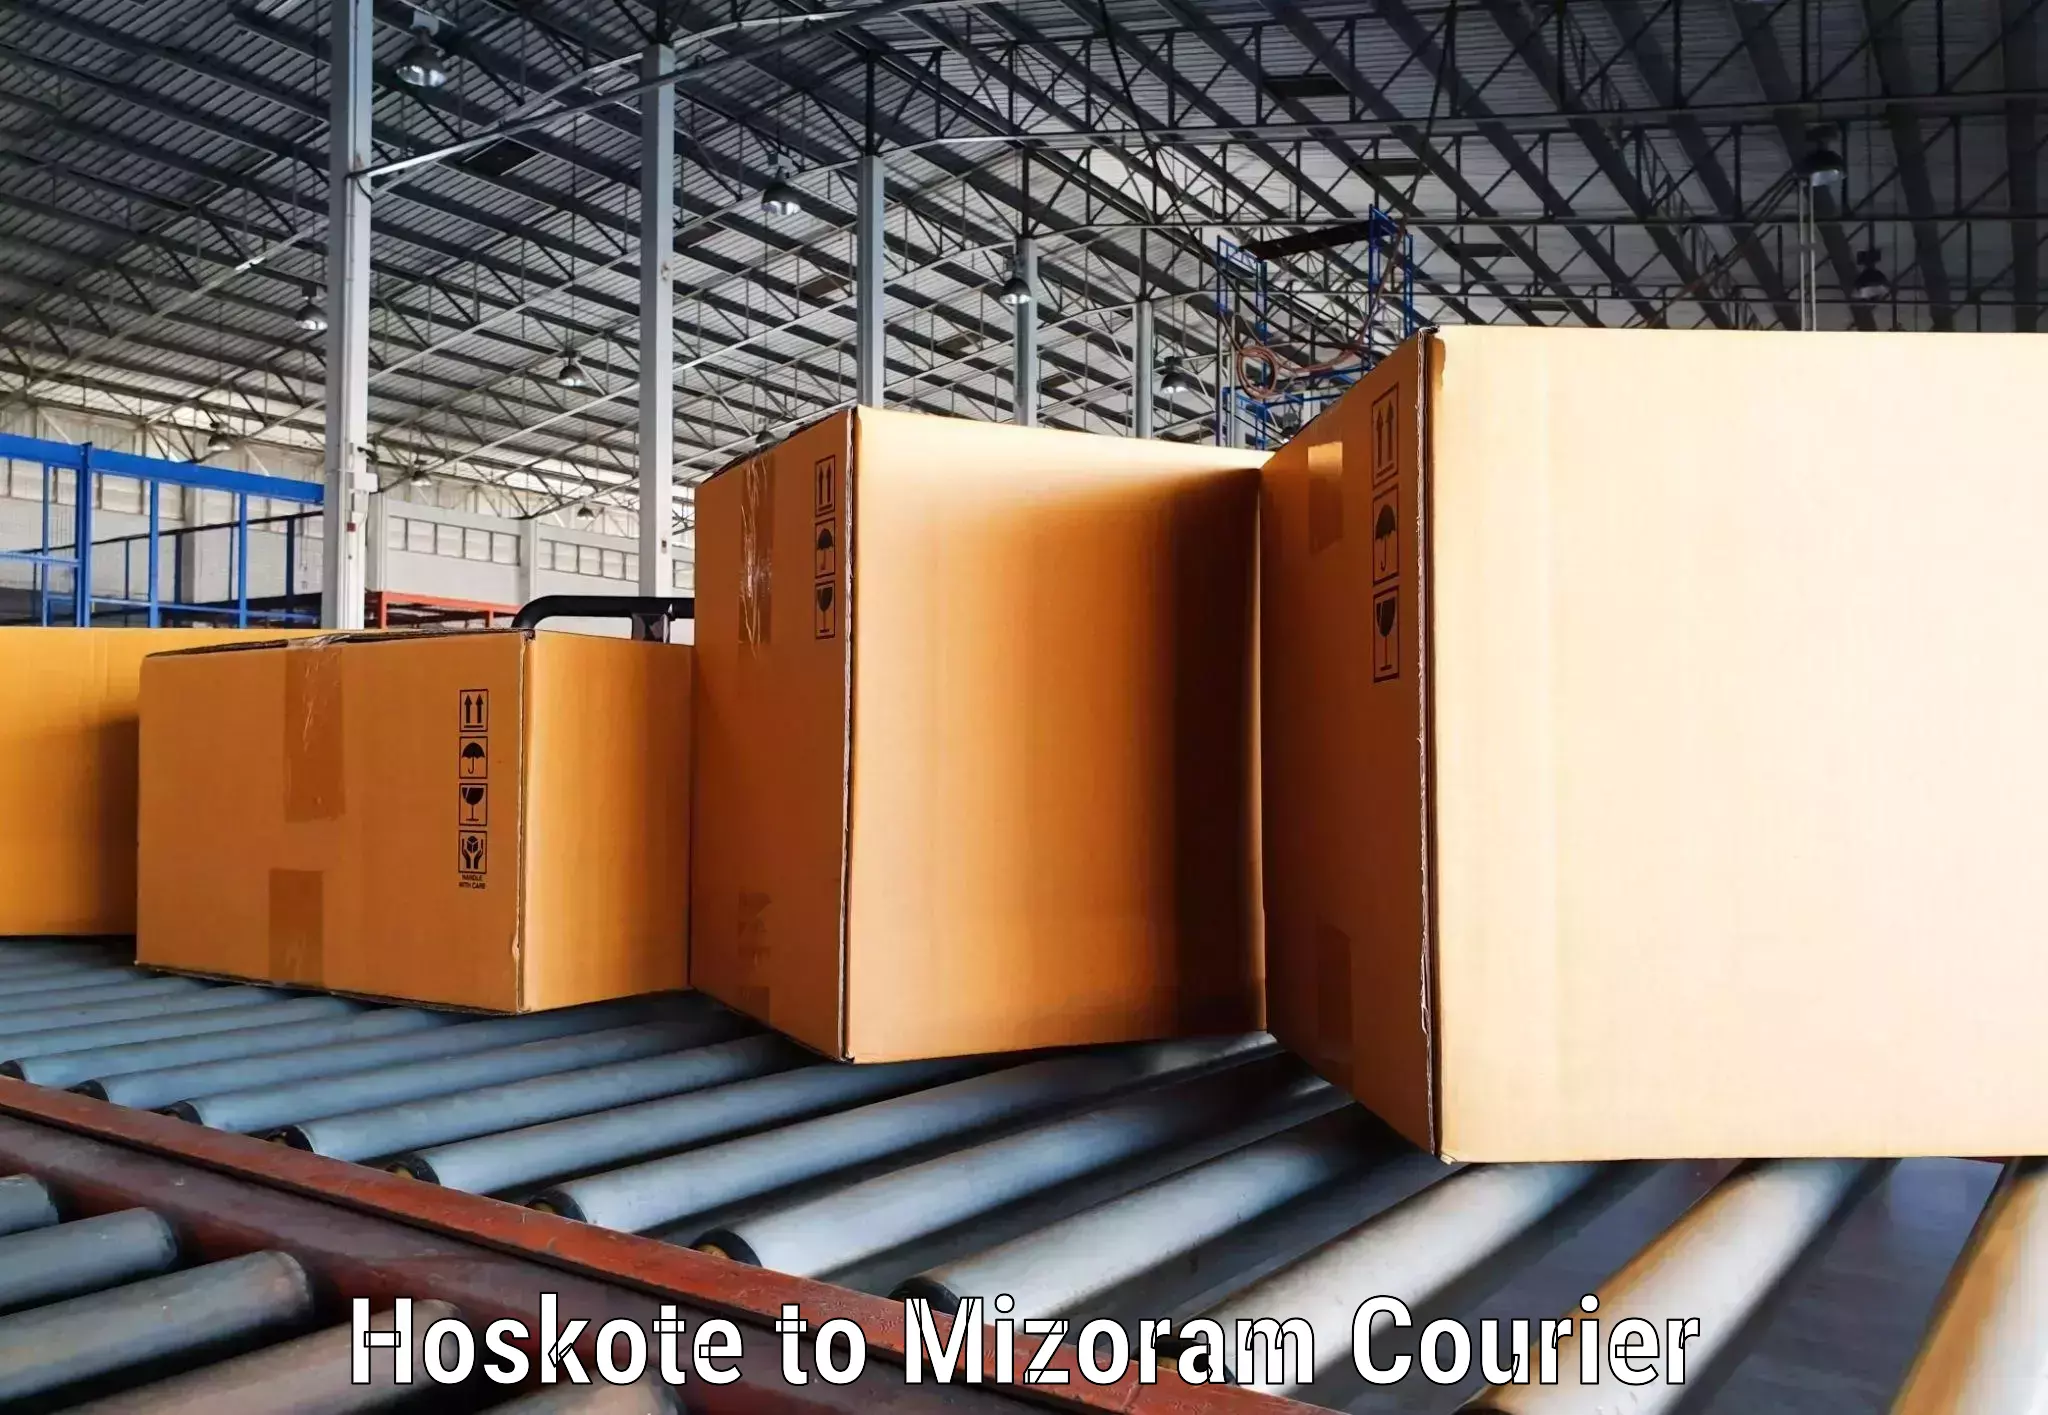 Express package handling Hoskote to Mizoram